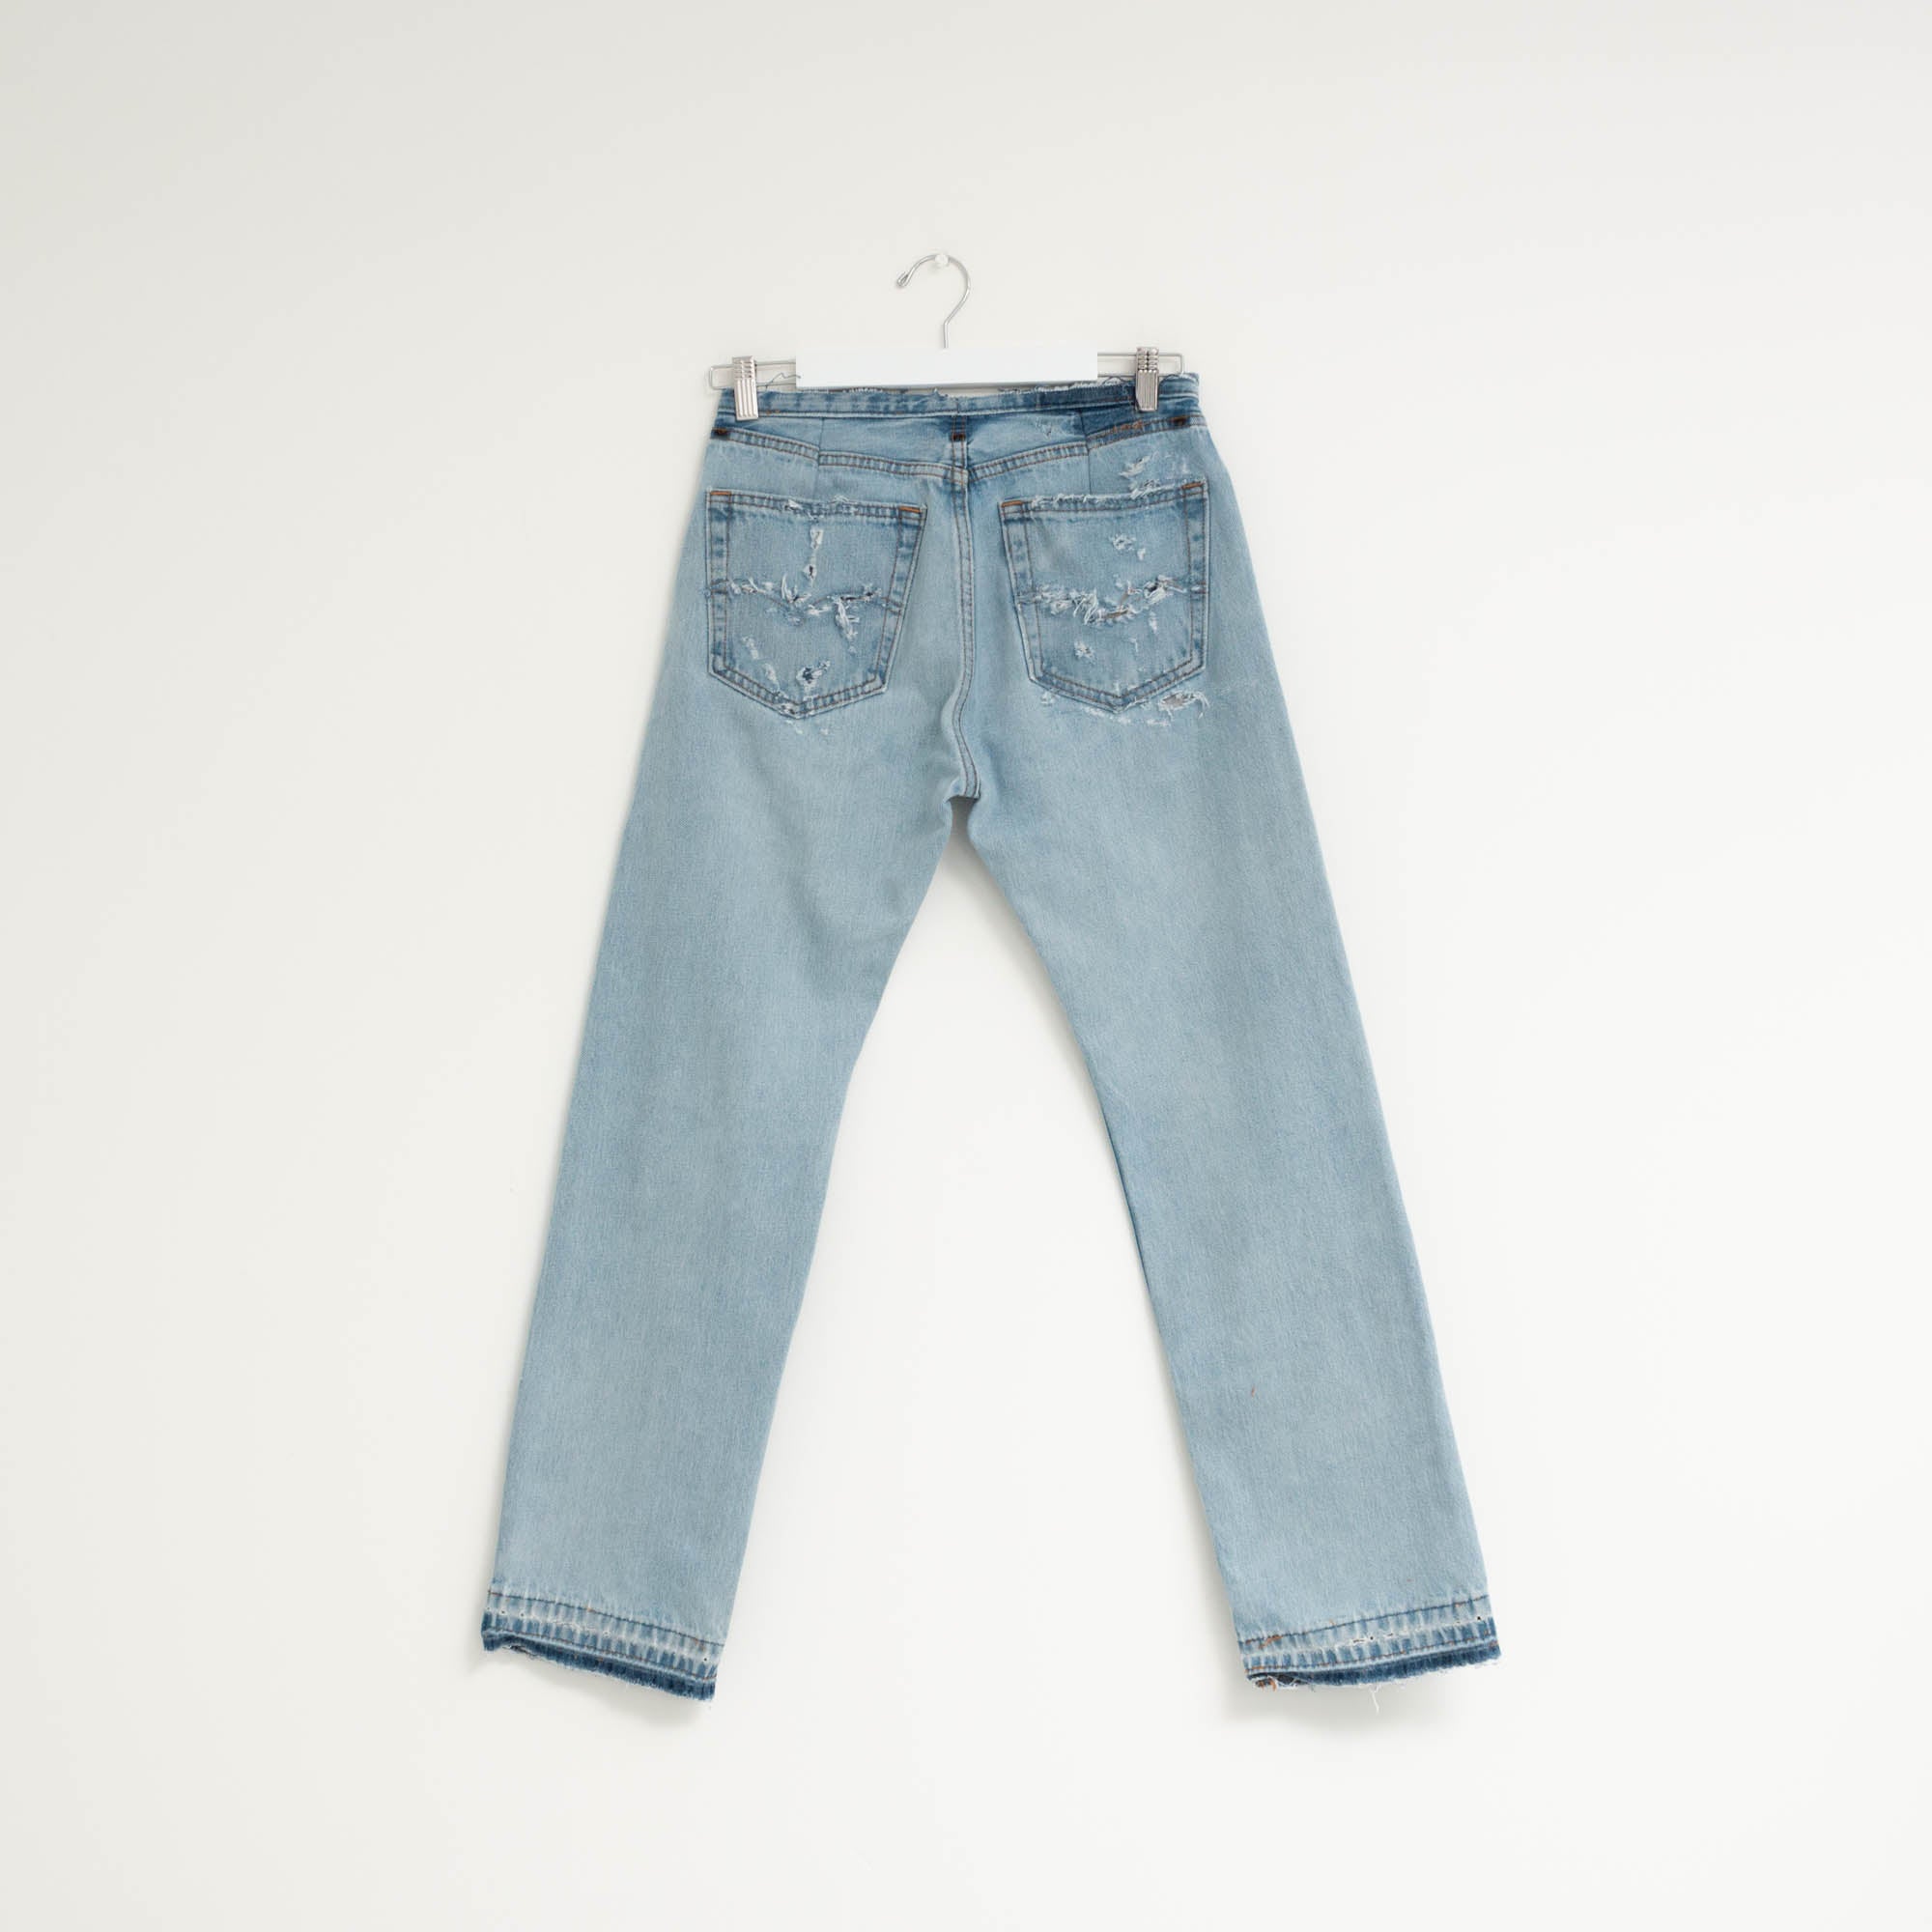 "DISTRESSED" Jeans W28 L30